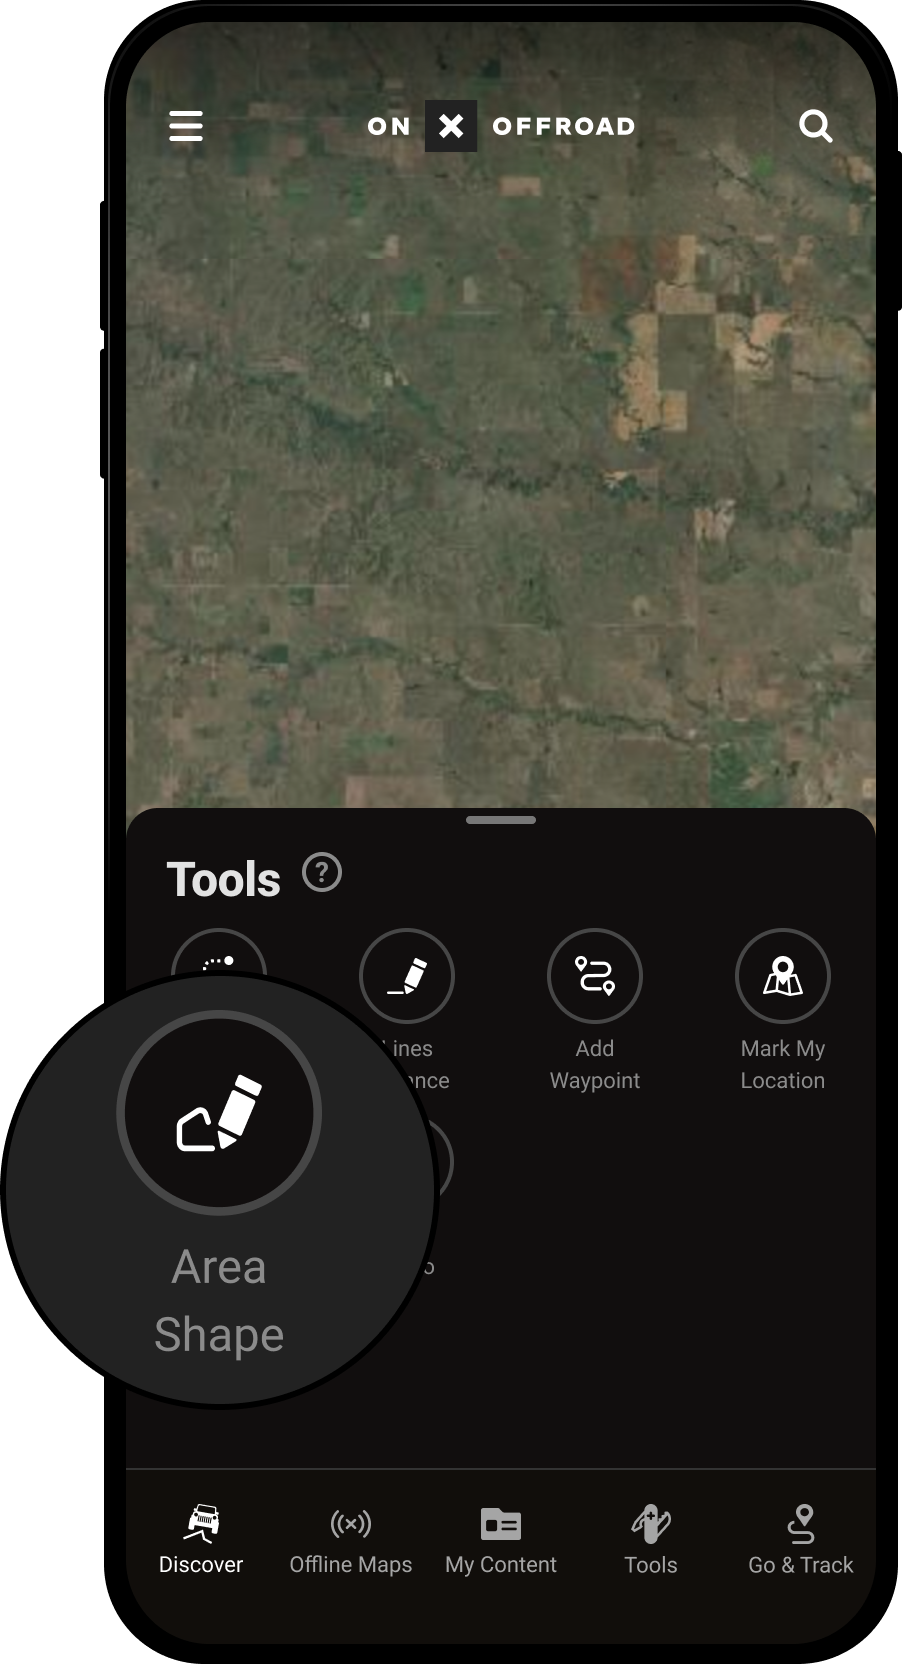 Area Shape Tools Menu Offroad App.png